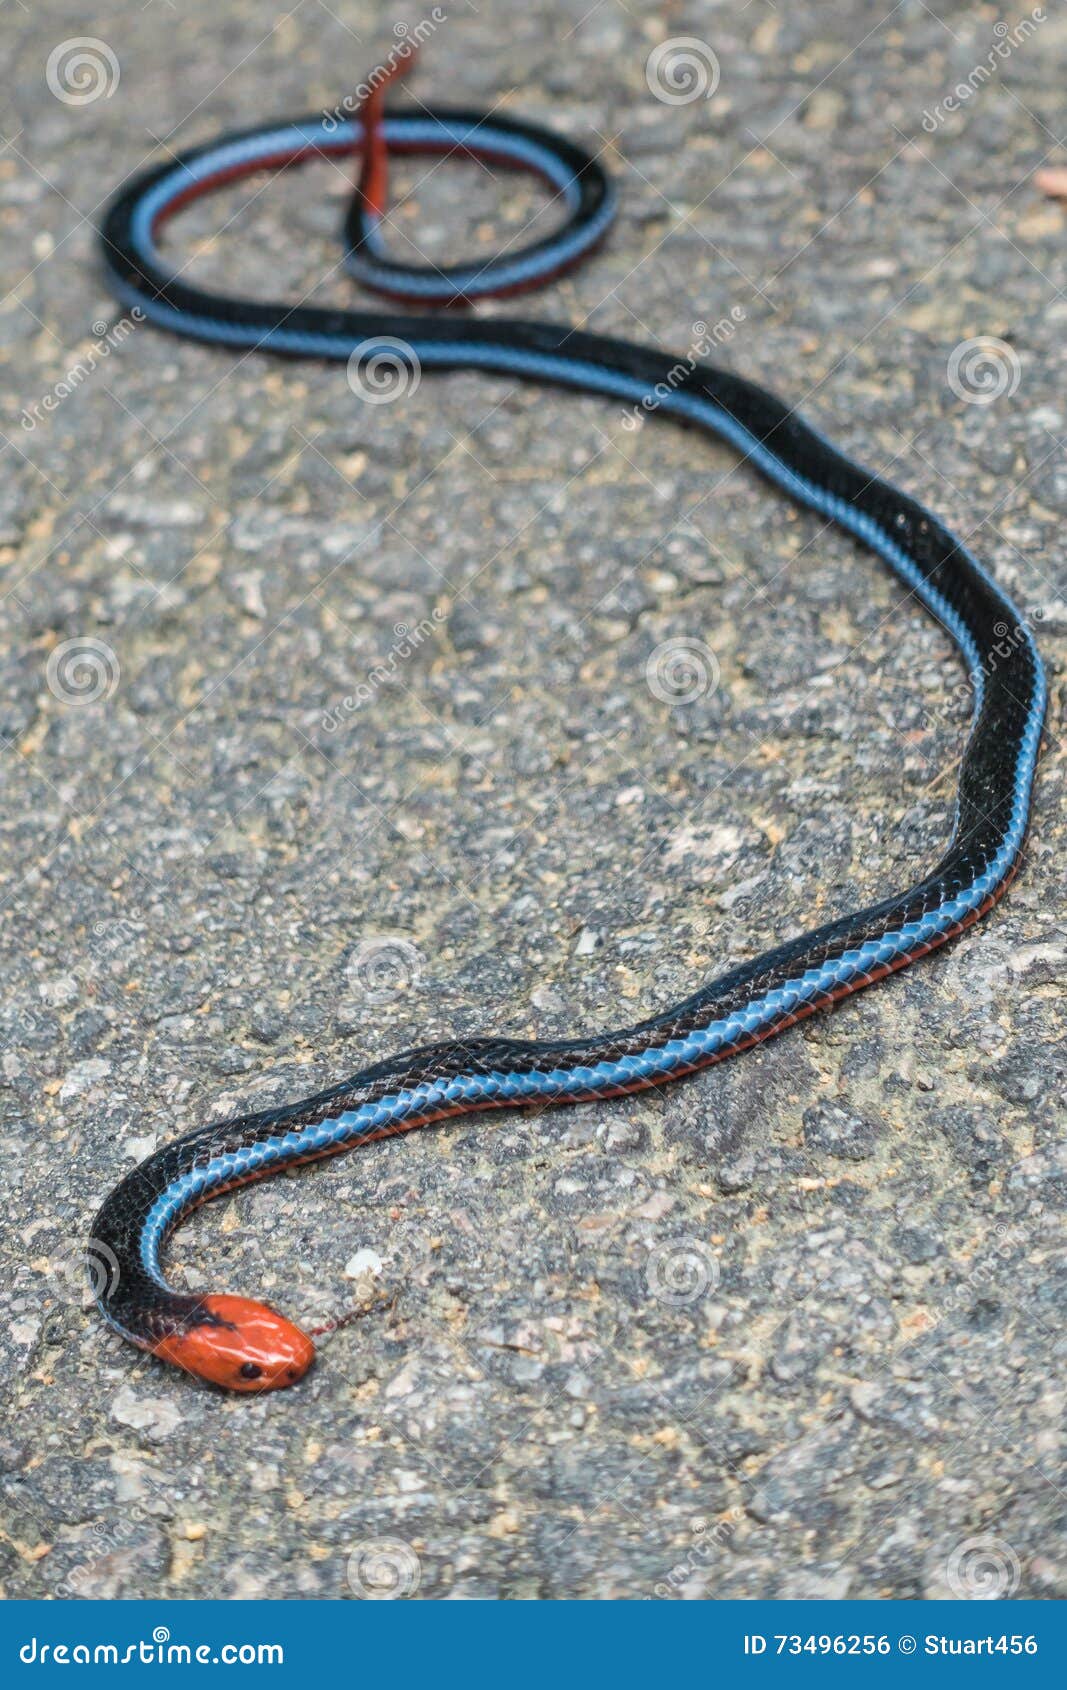 Черная змея на голове пятна. Calliophis bivirgata. Черная змея с красной головой. Черная змея с оранжевой головой. Черная змея с оранжевыми пятнами.